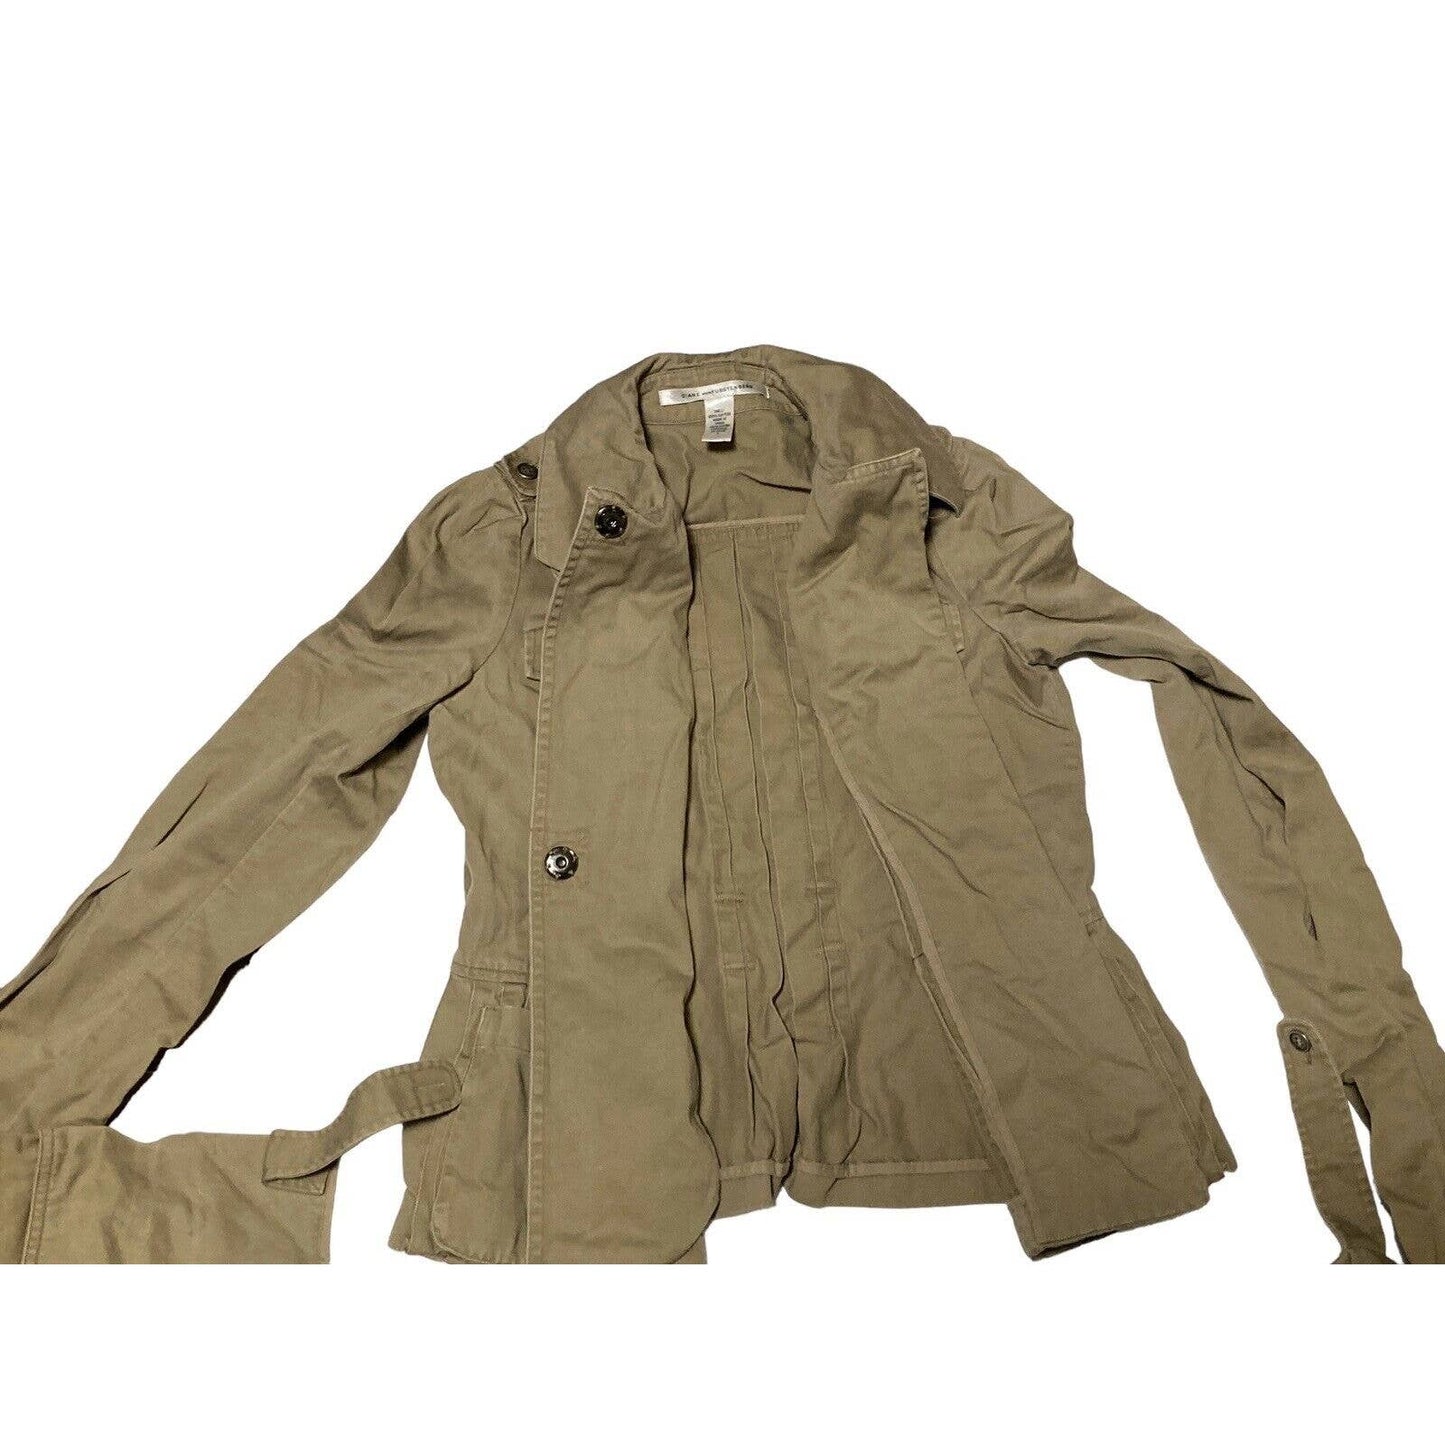 Diane Von Furstenberg 100% Cotton Brown Blazer Utility Jacket Size 4